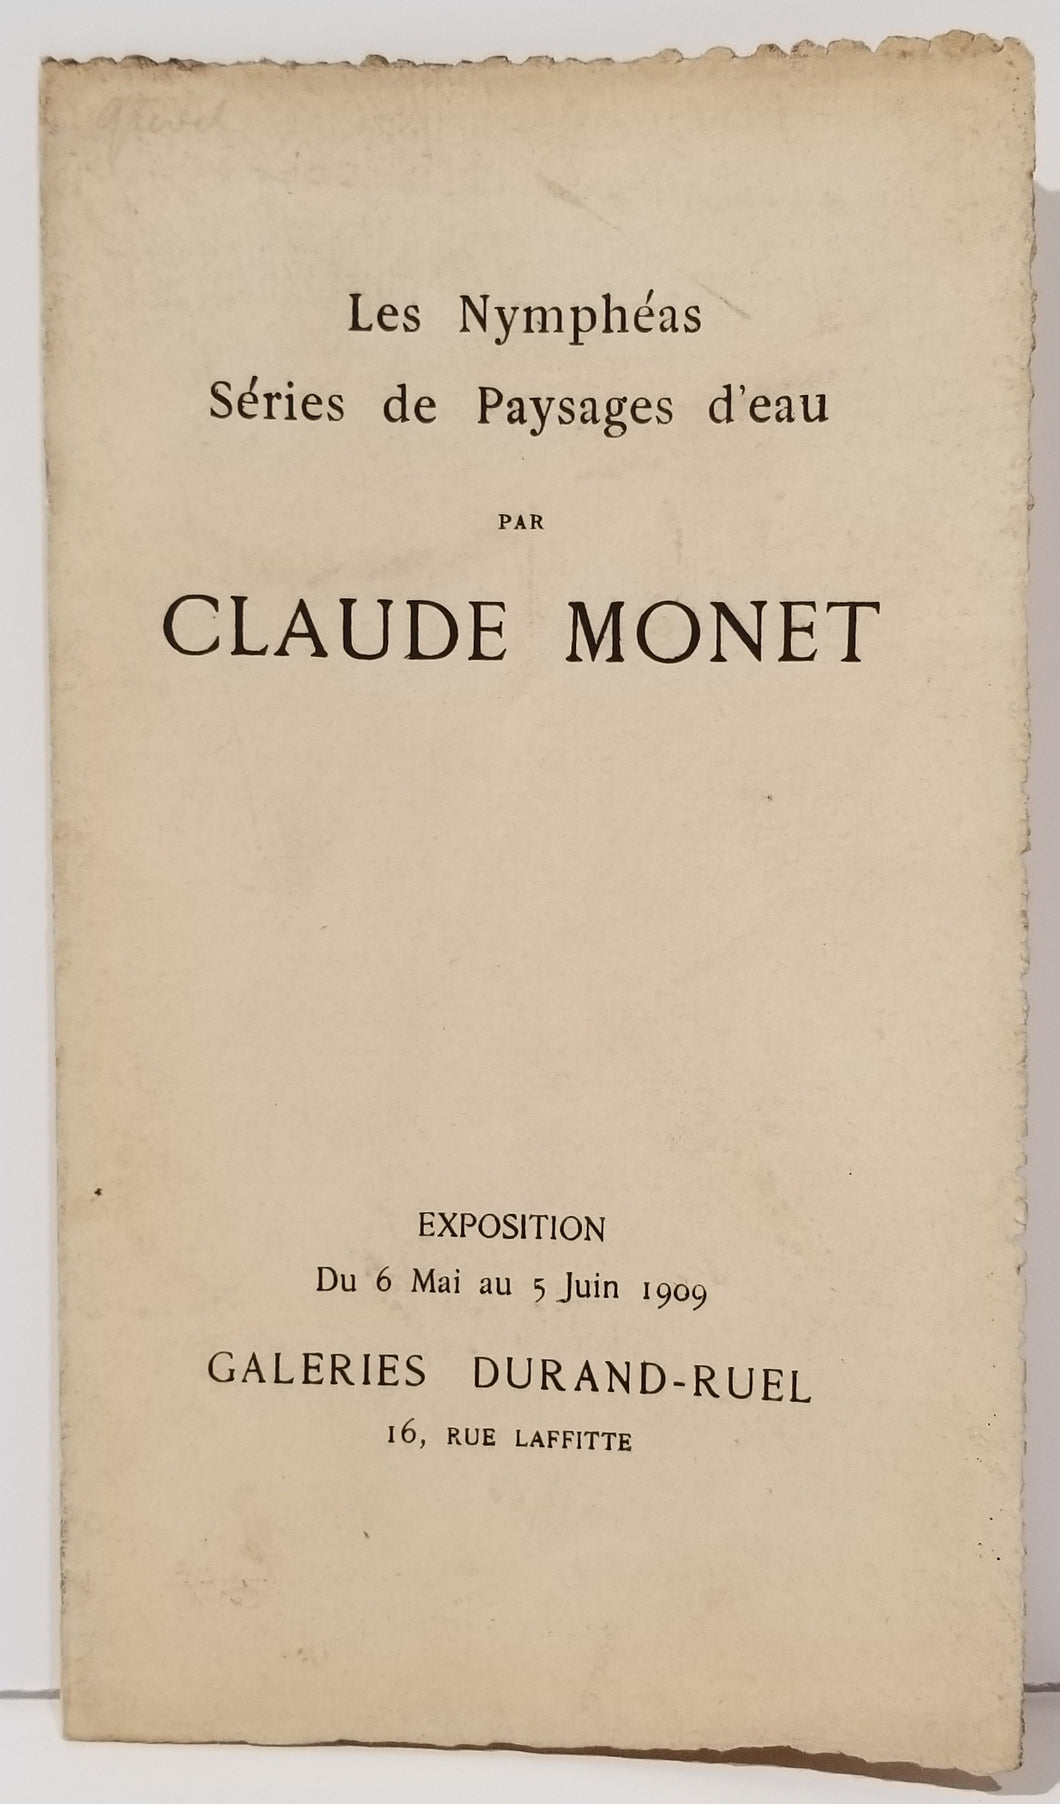 [Livret d'exposition des Galeries Durand-Ruel]. Les Nymphéas. Série de Paysages d'eau, par Claude Monet. 1909.